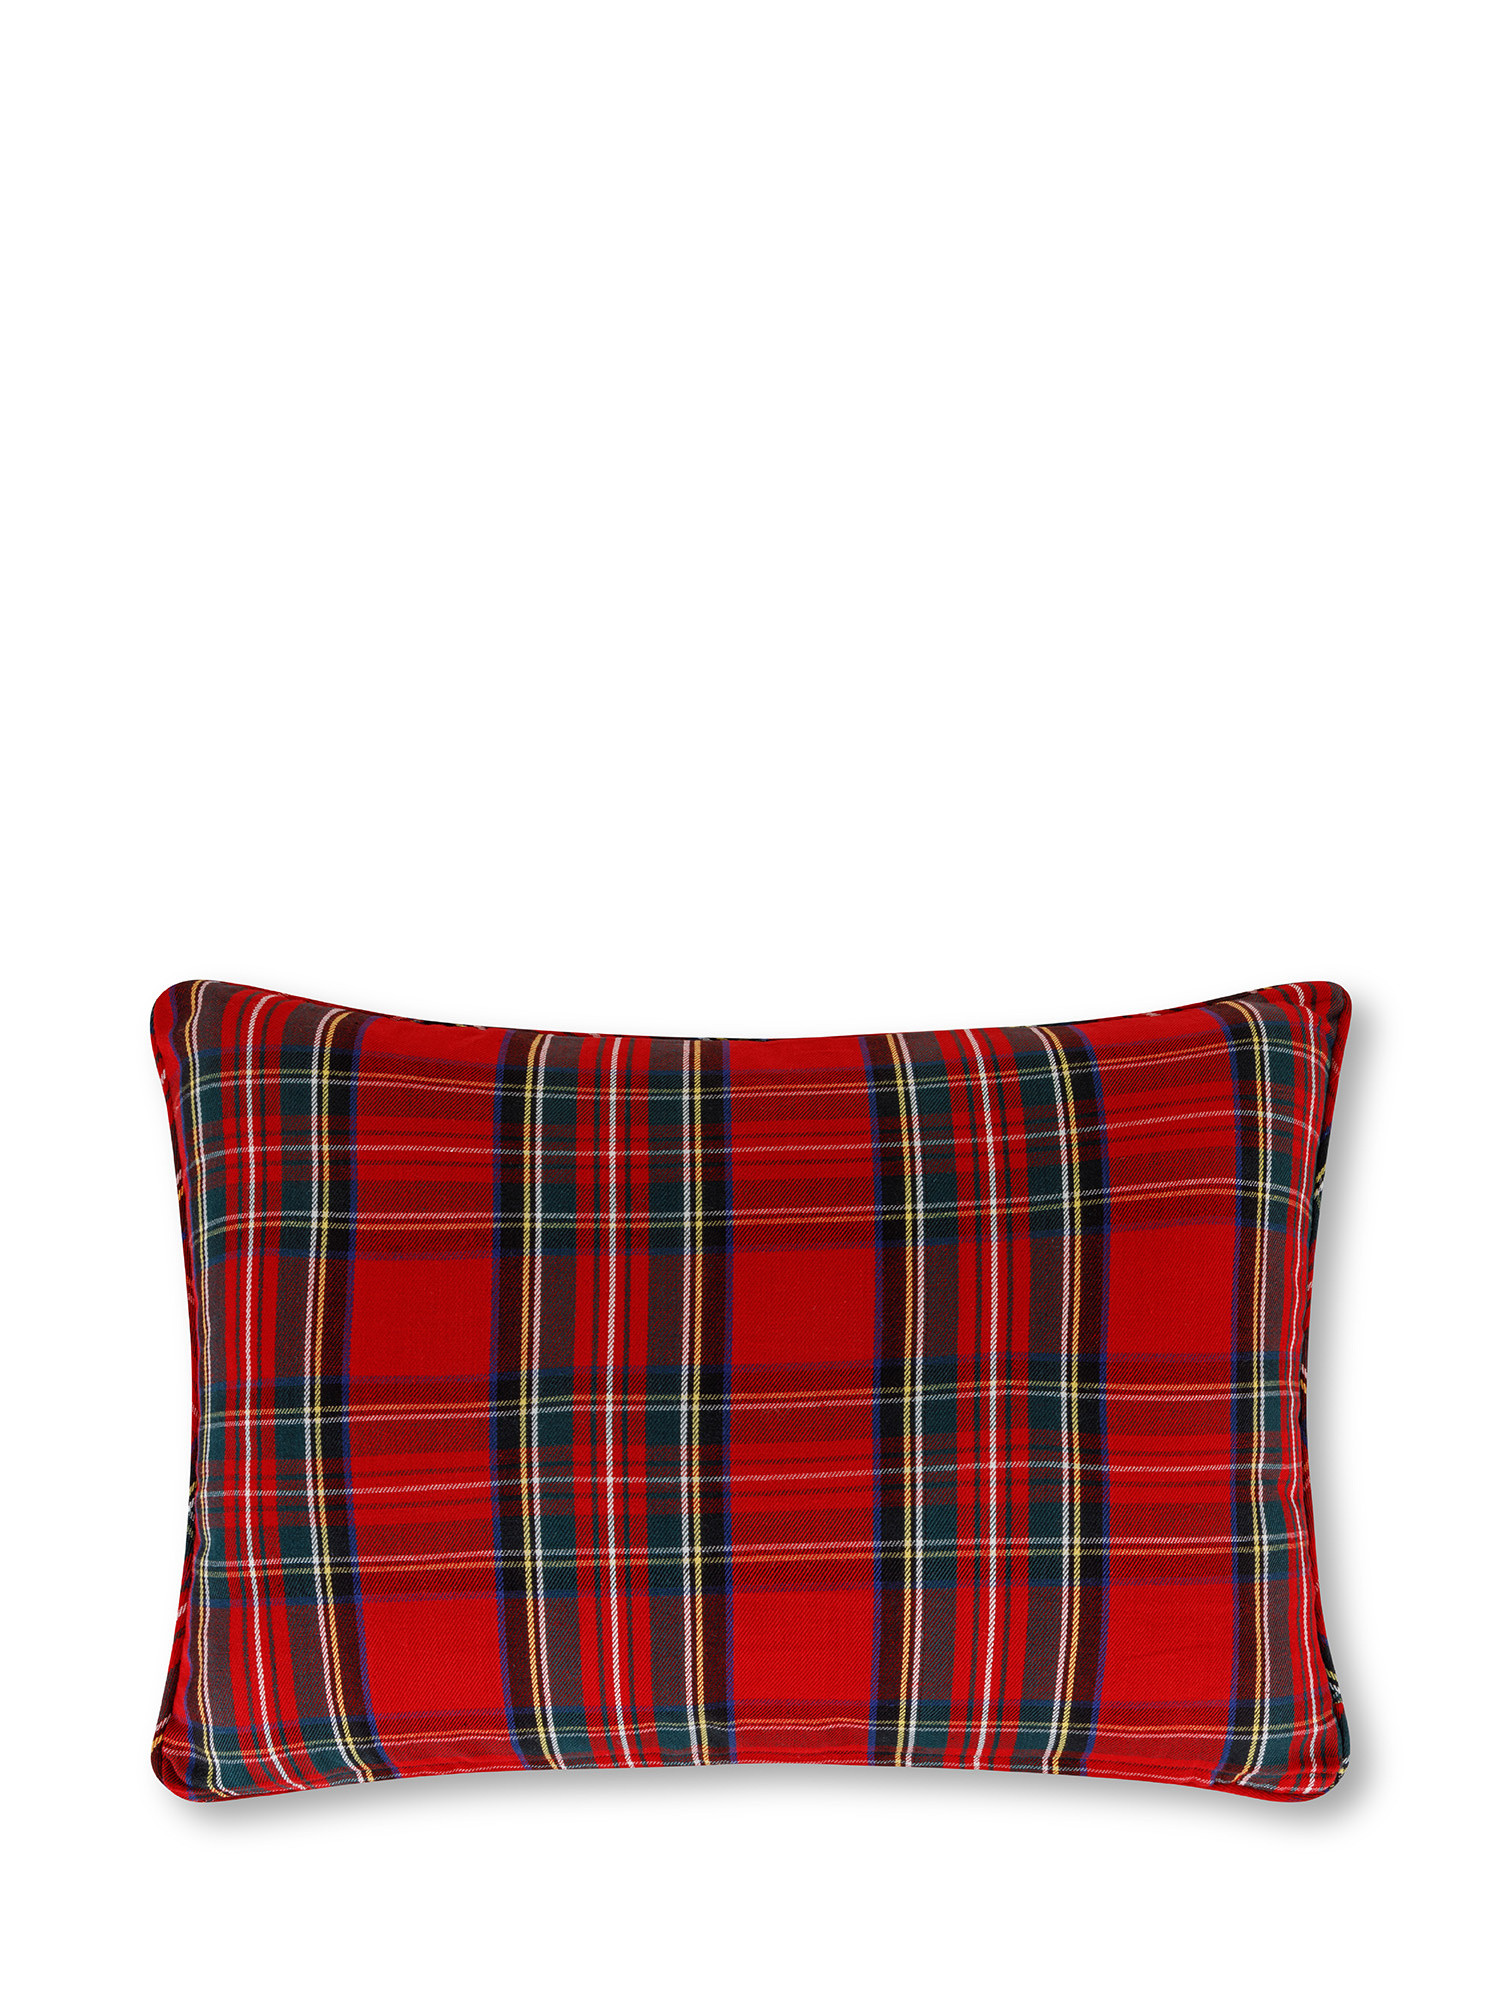 Tartan cushion 35x50 cm, Red, large image number 0